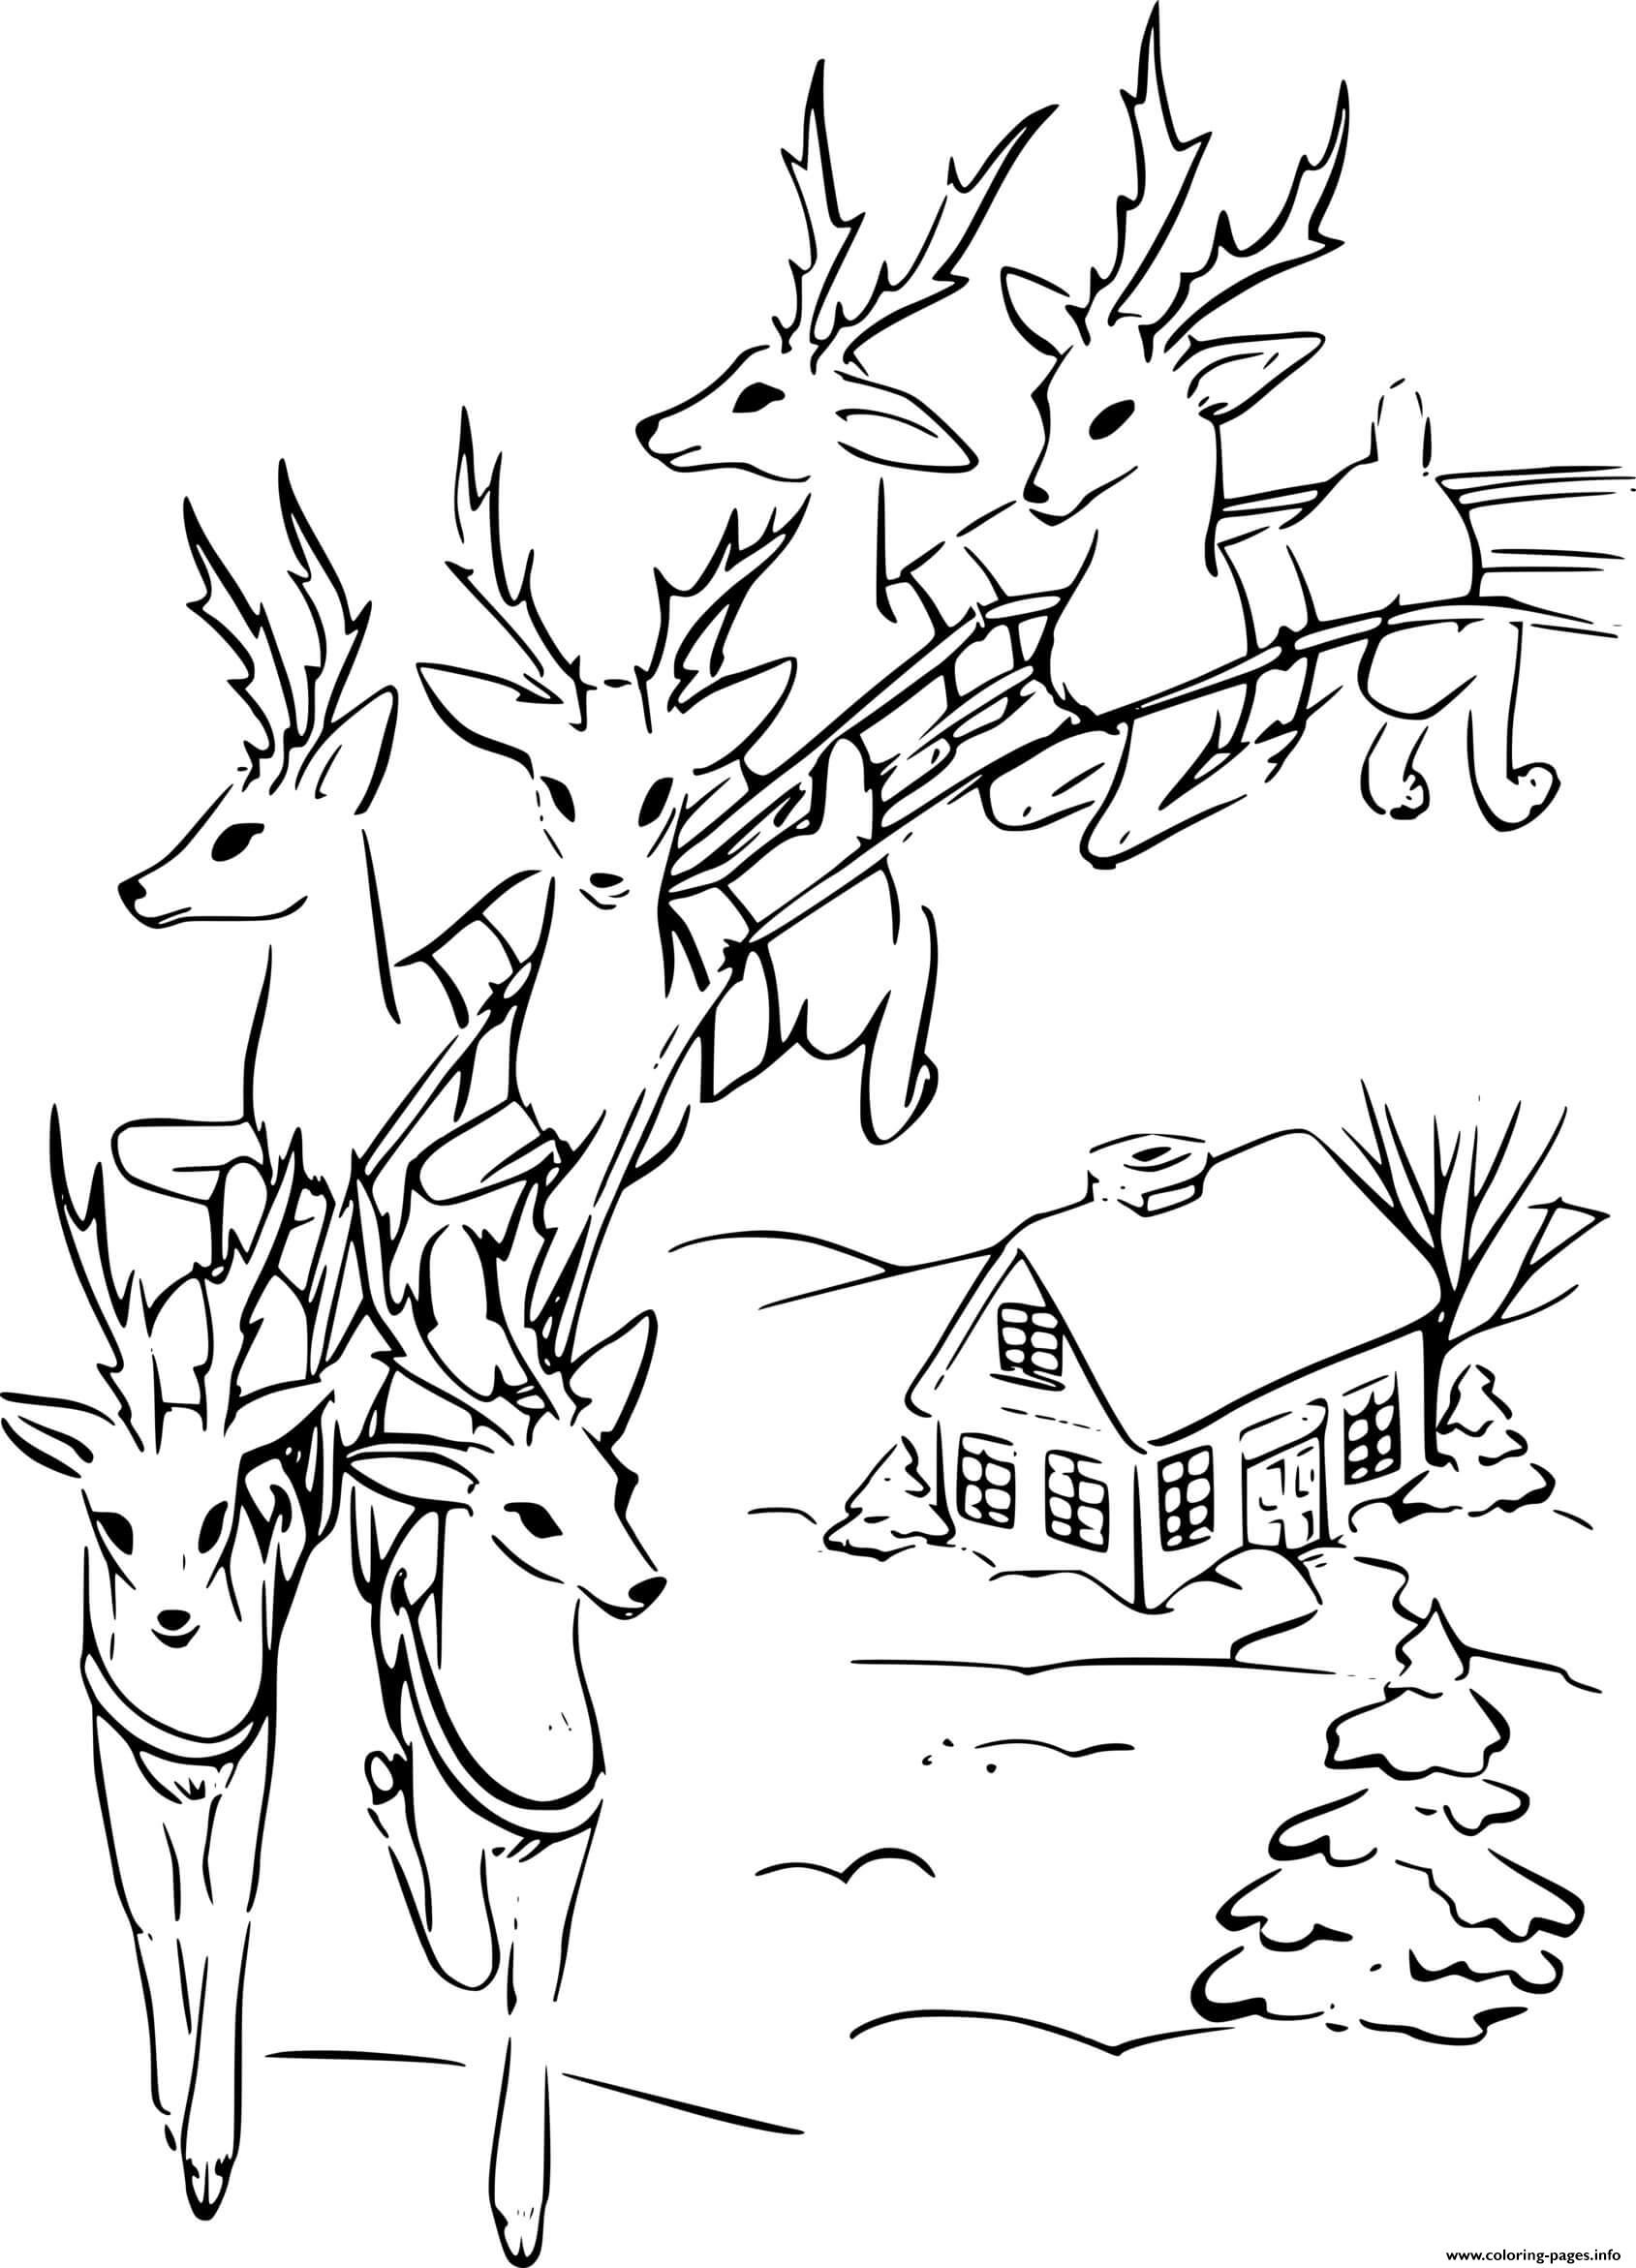 Six Reindeer Flying coloring